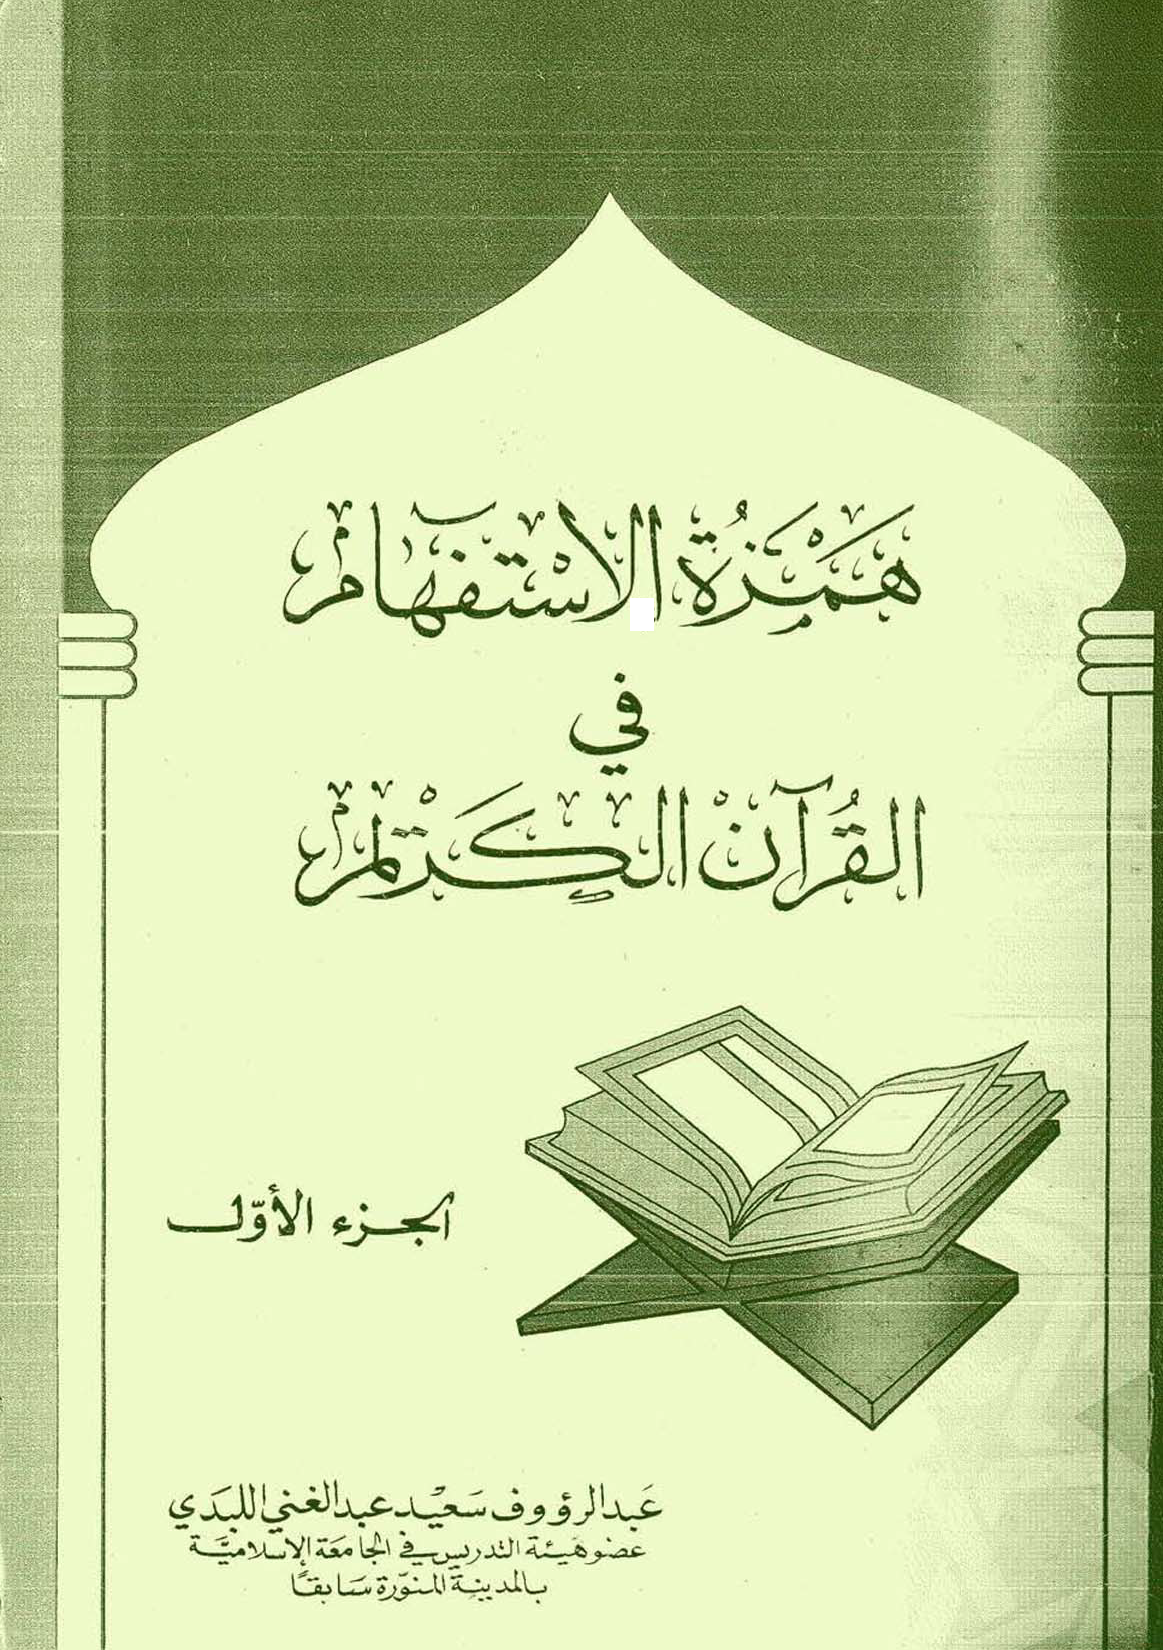 تحميل كتاب همزة الاستفهام في القرآن الكريم (الجزء الأول) للمؤلف: الأستاذ عبد الرؤوف سعيد عبد الغني اللبدي